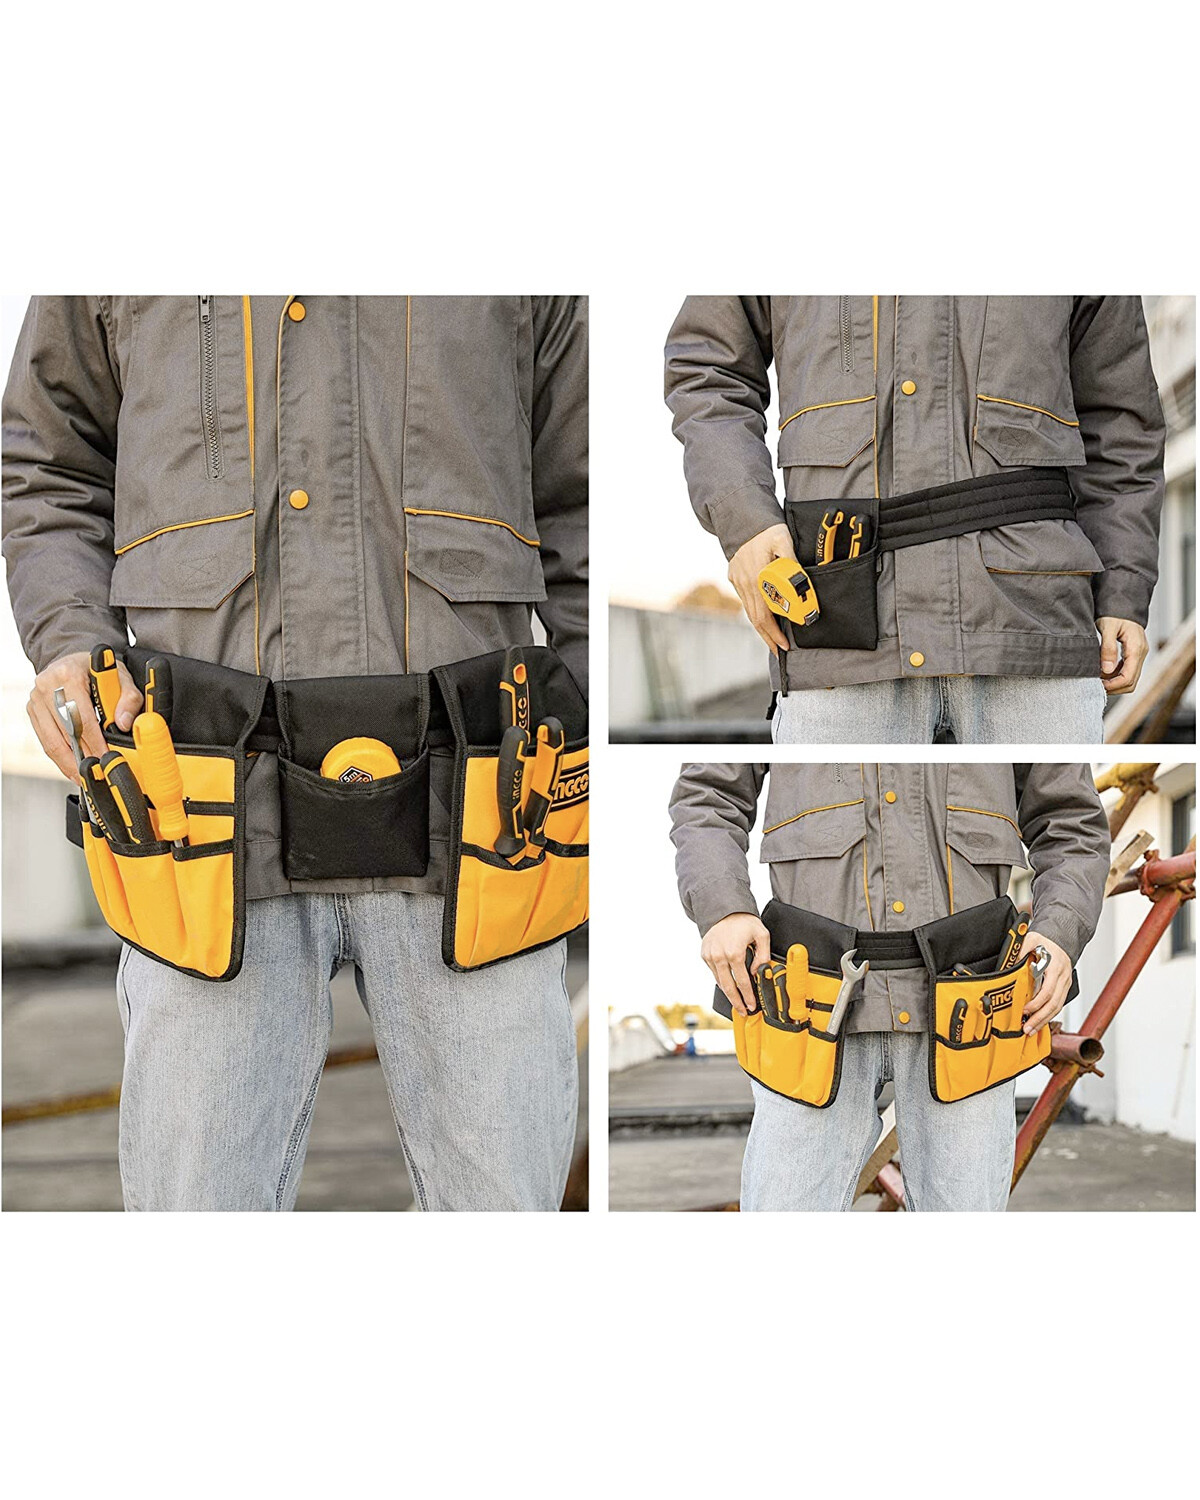 Cinturón ajustable doble Ingco porta herramientas 14 bolsillos